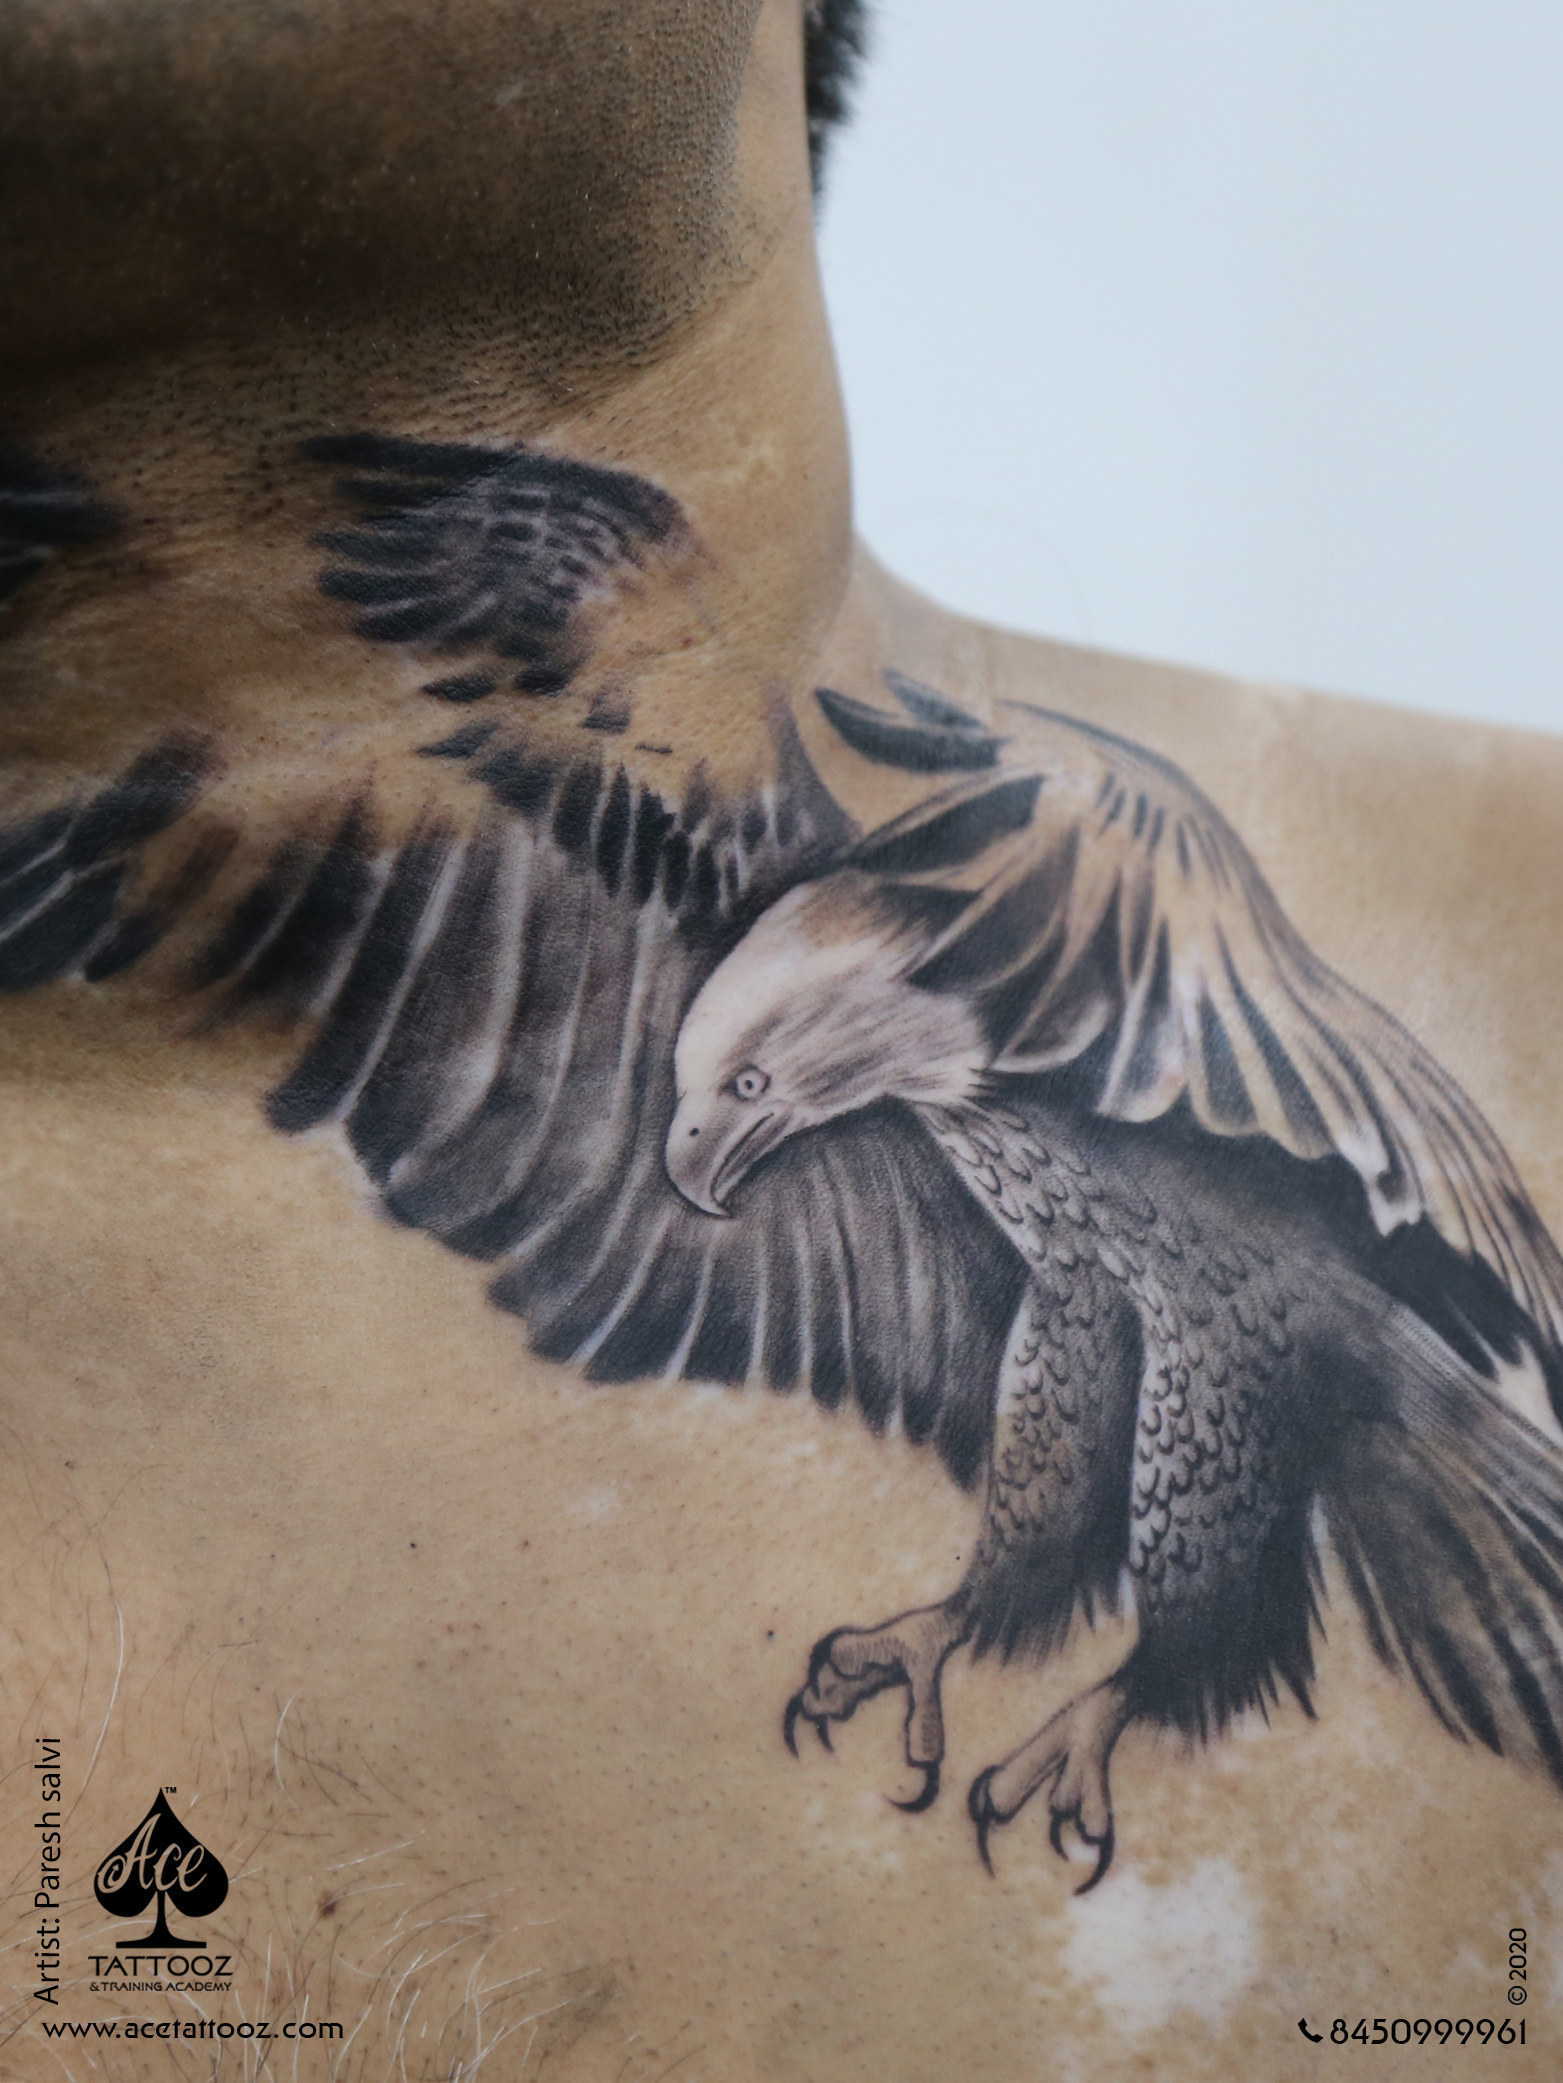 Vitiligo Cover Up Tattoo